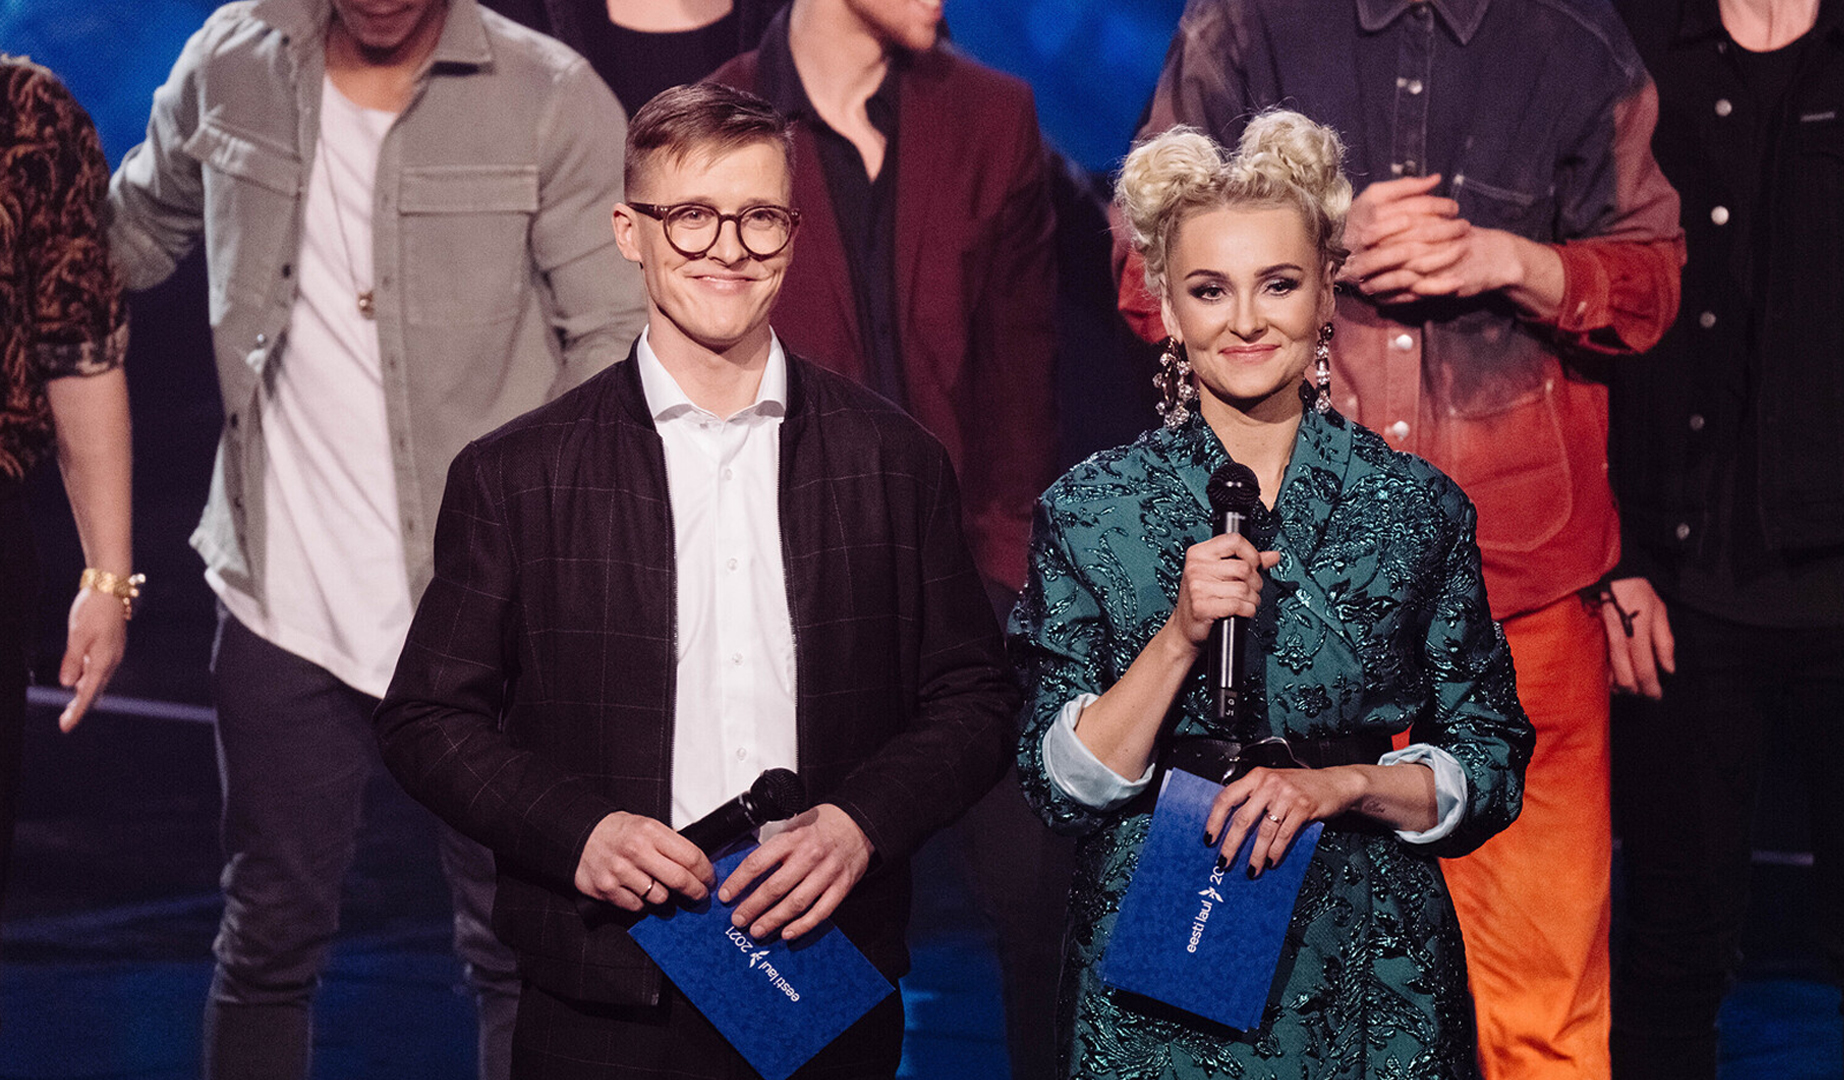 Audiencias Sociales: La primera semifinal del Eesti Laul 2021 tuvo un impacto de 1,4M de usuarios